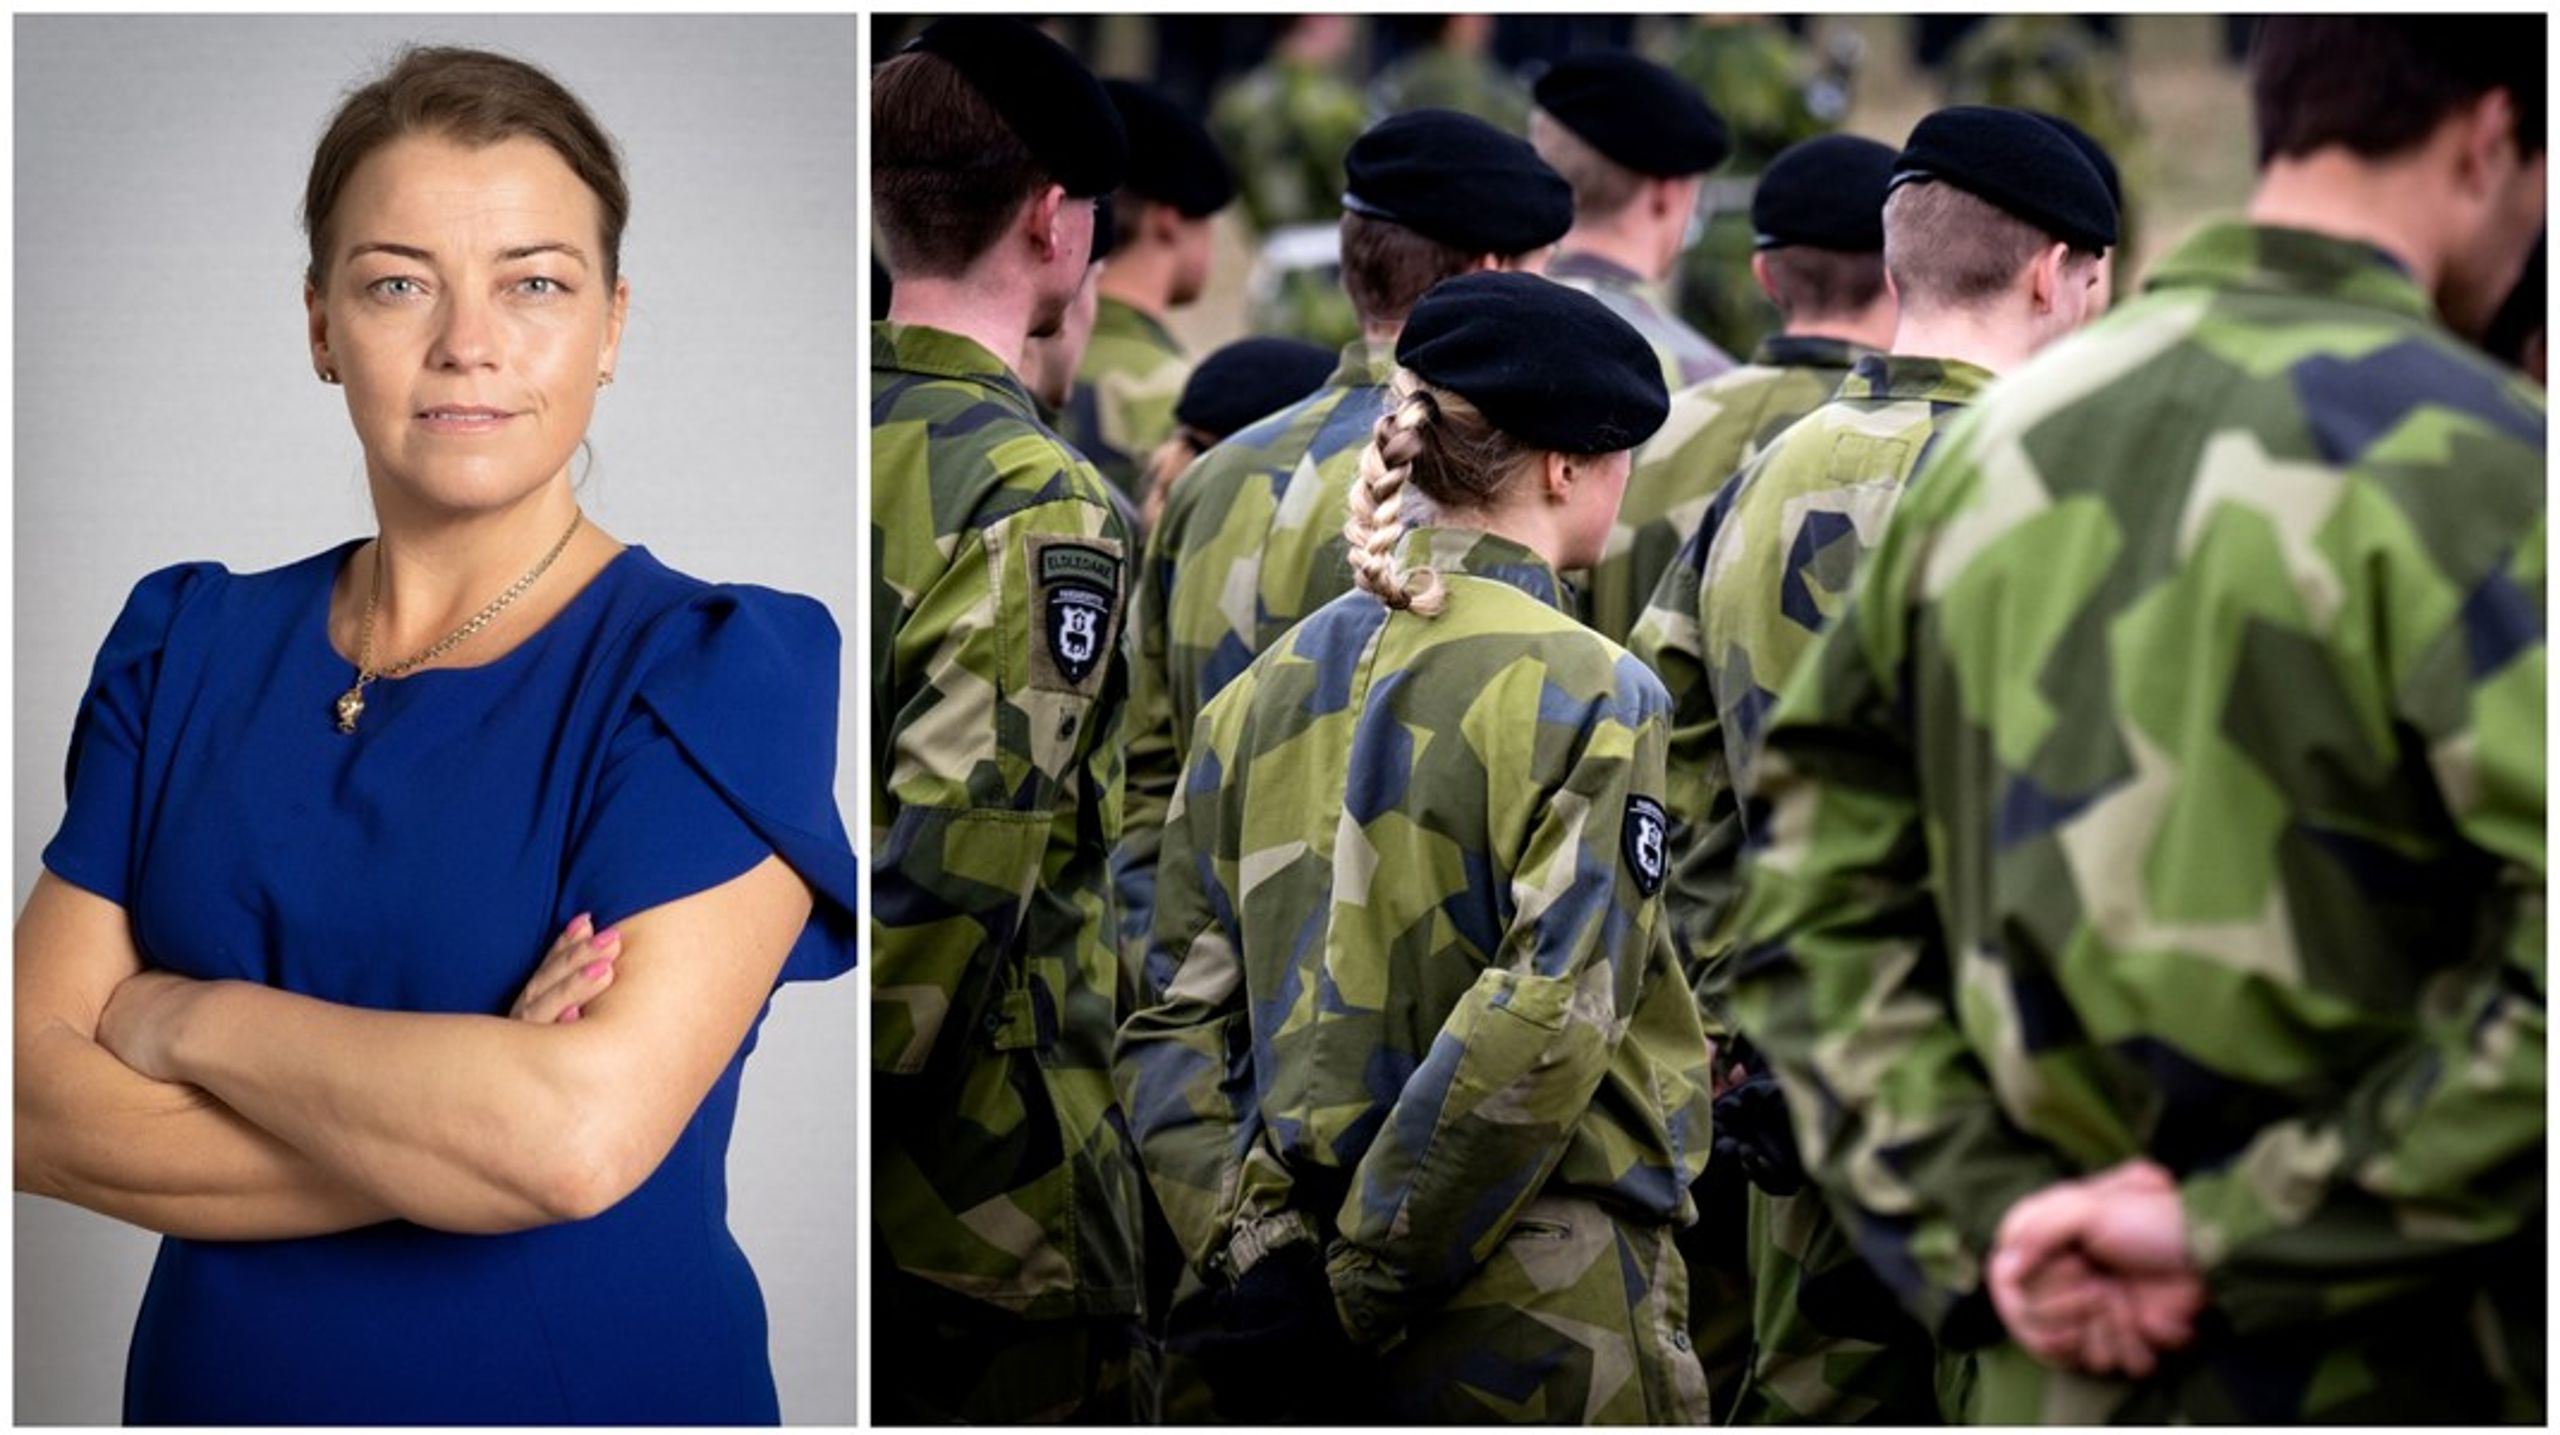 Regeringen har tillsatt en rad olika utredningar för att stärka Sveriges totalförsvar. Miljötillståndsprocessen vid byggandet av skjutbanor ska också bli snabbare.